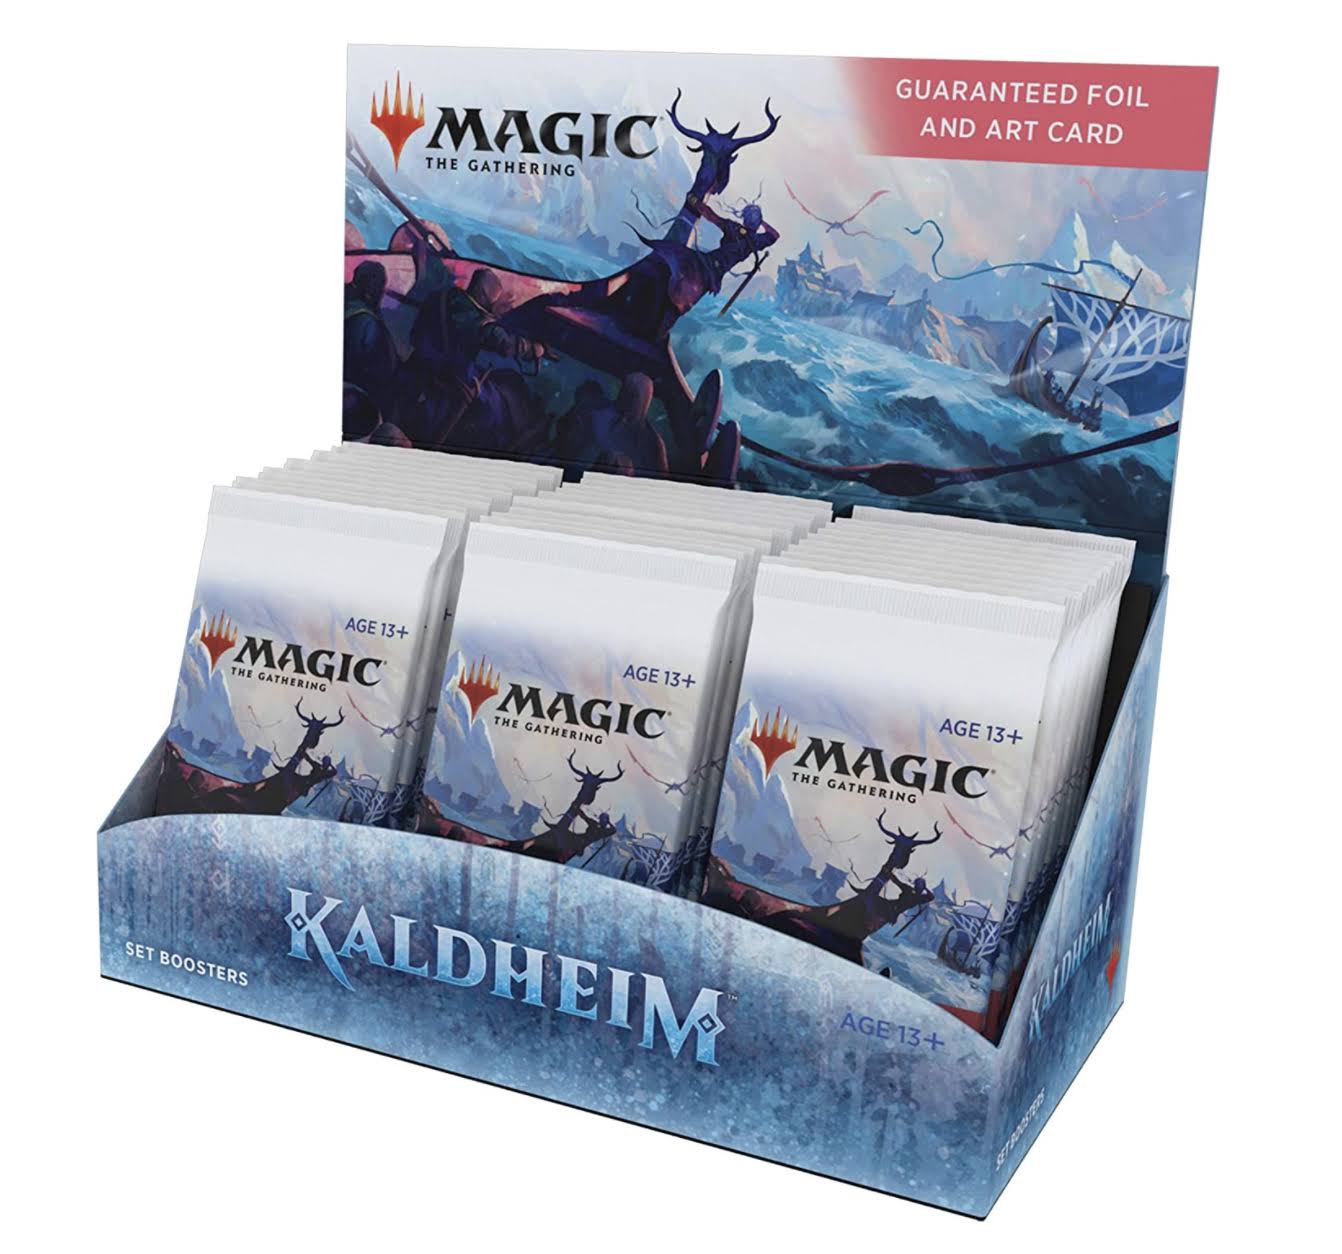 Magic The Gathering Kaldheim Set Booster Box